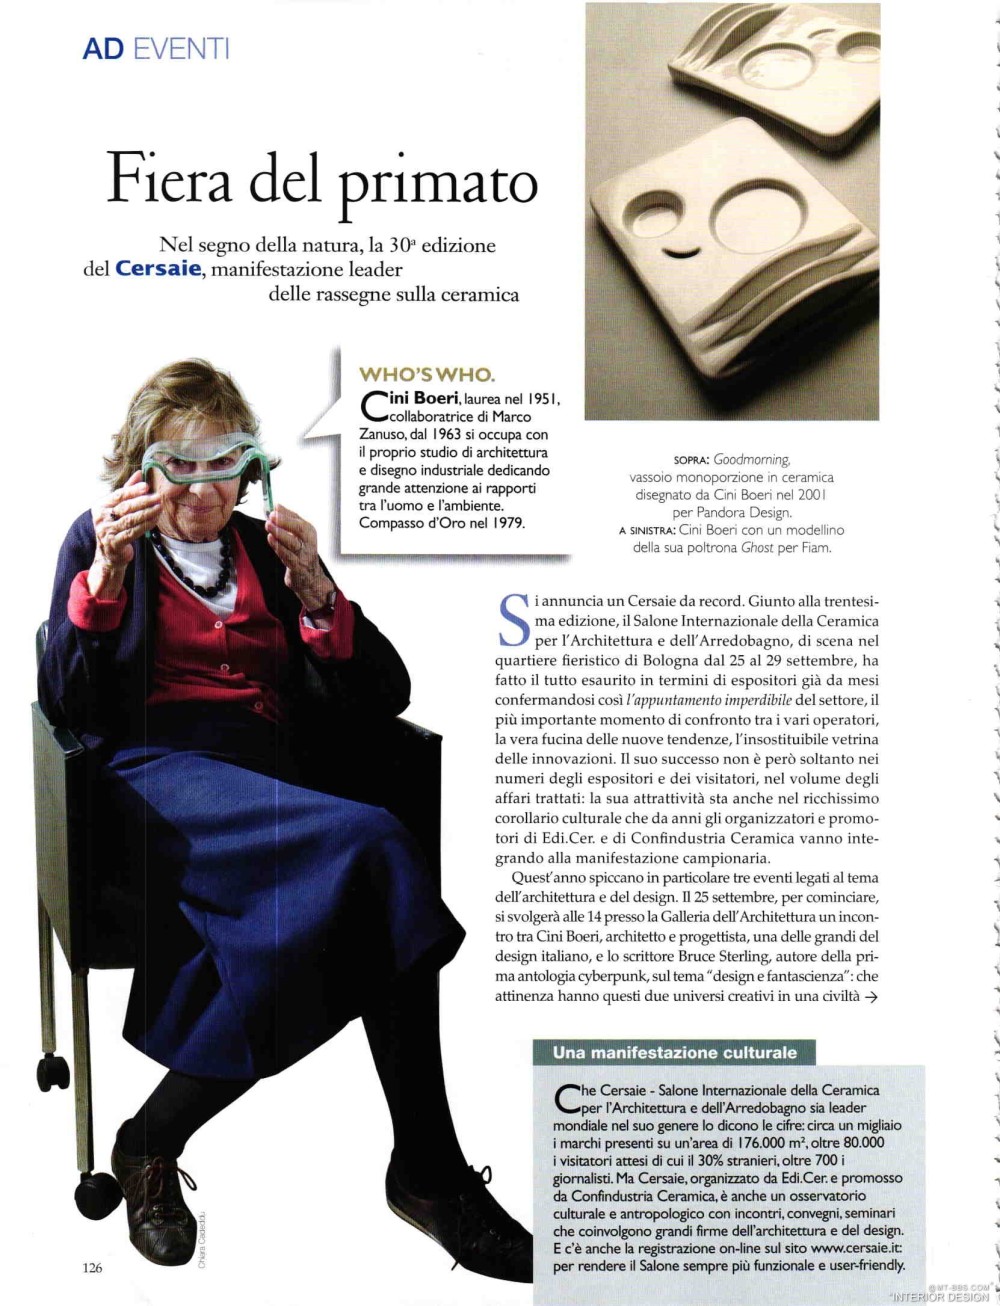 意大利AD 杂志 2012年全年JPG高清版本 全免（上传完毕）_0128.jpg